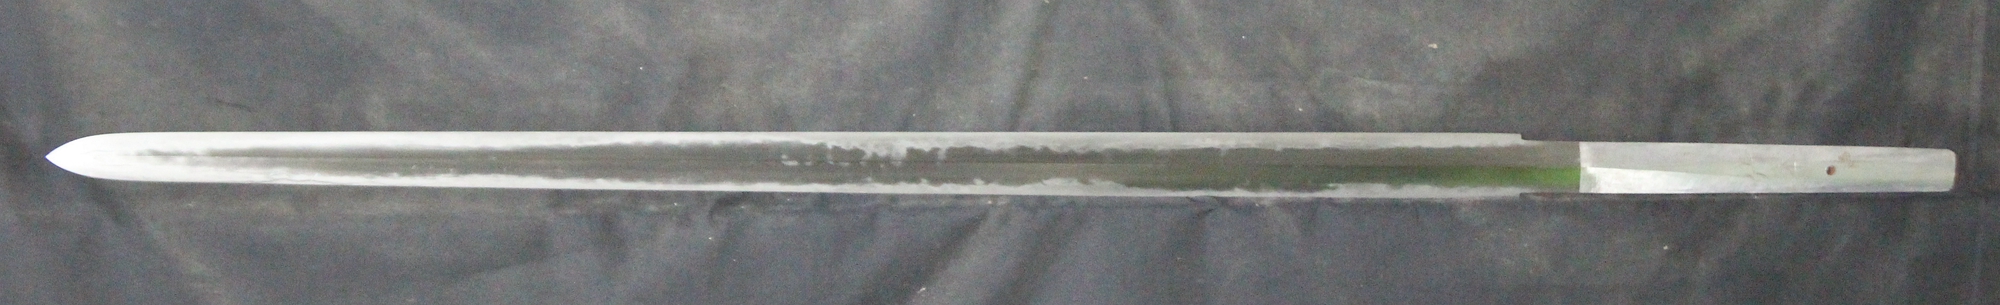 1903剑